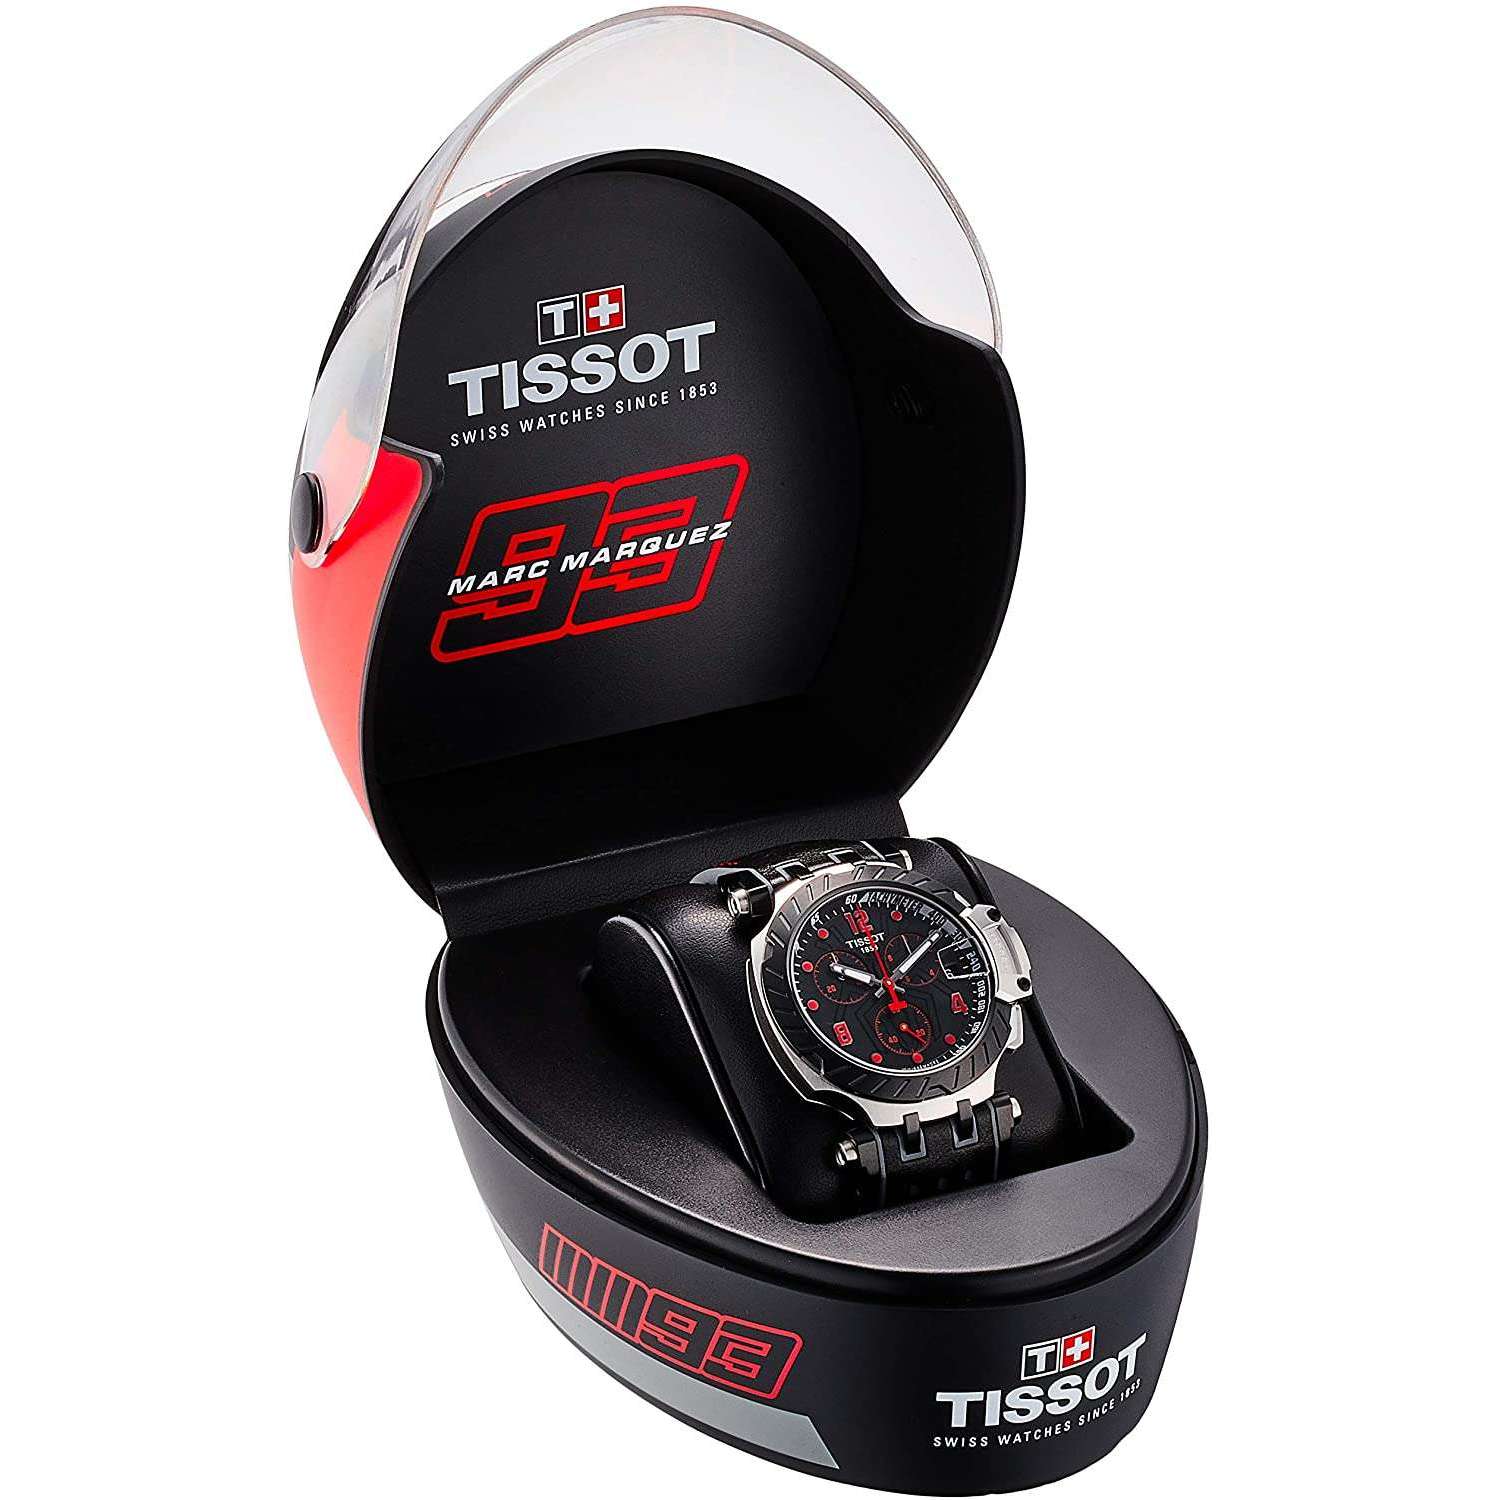 ROOK JAPAN:TISSOT T-RACE CHRONOGRAPH MARC MARQUEZ 47 MM MEN WATCH (3993 LIMITED) T1154172705701,Luxury Watch,Tissot T-race